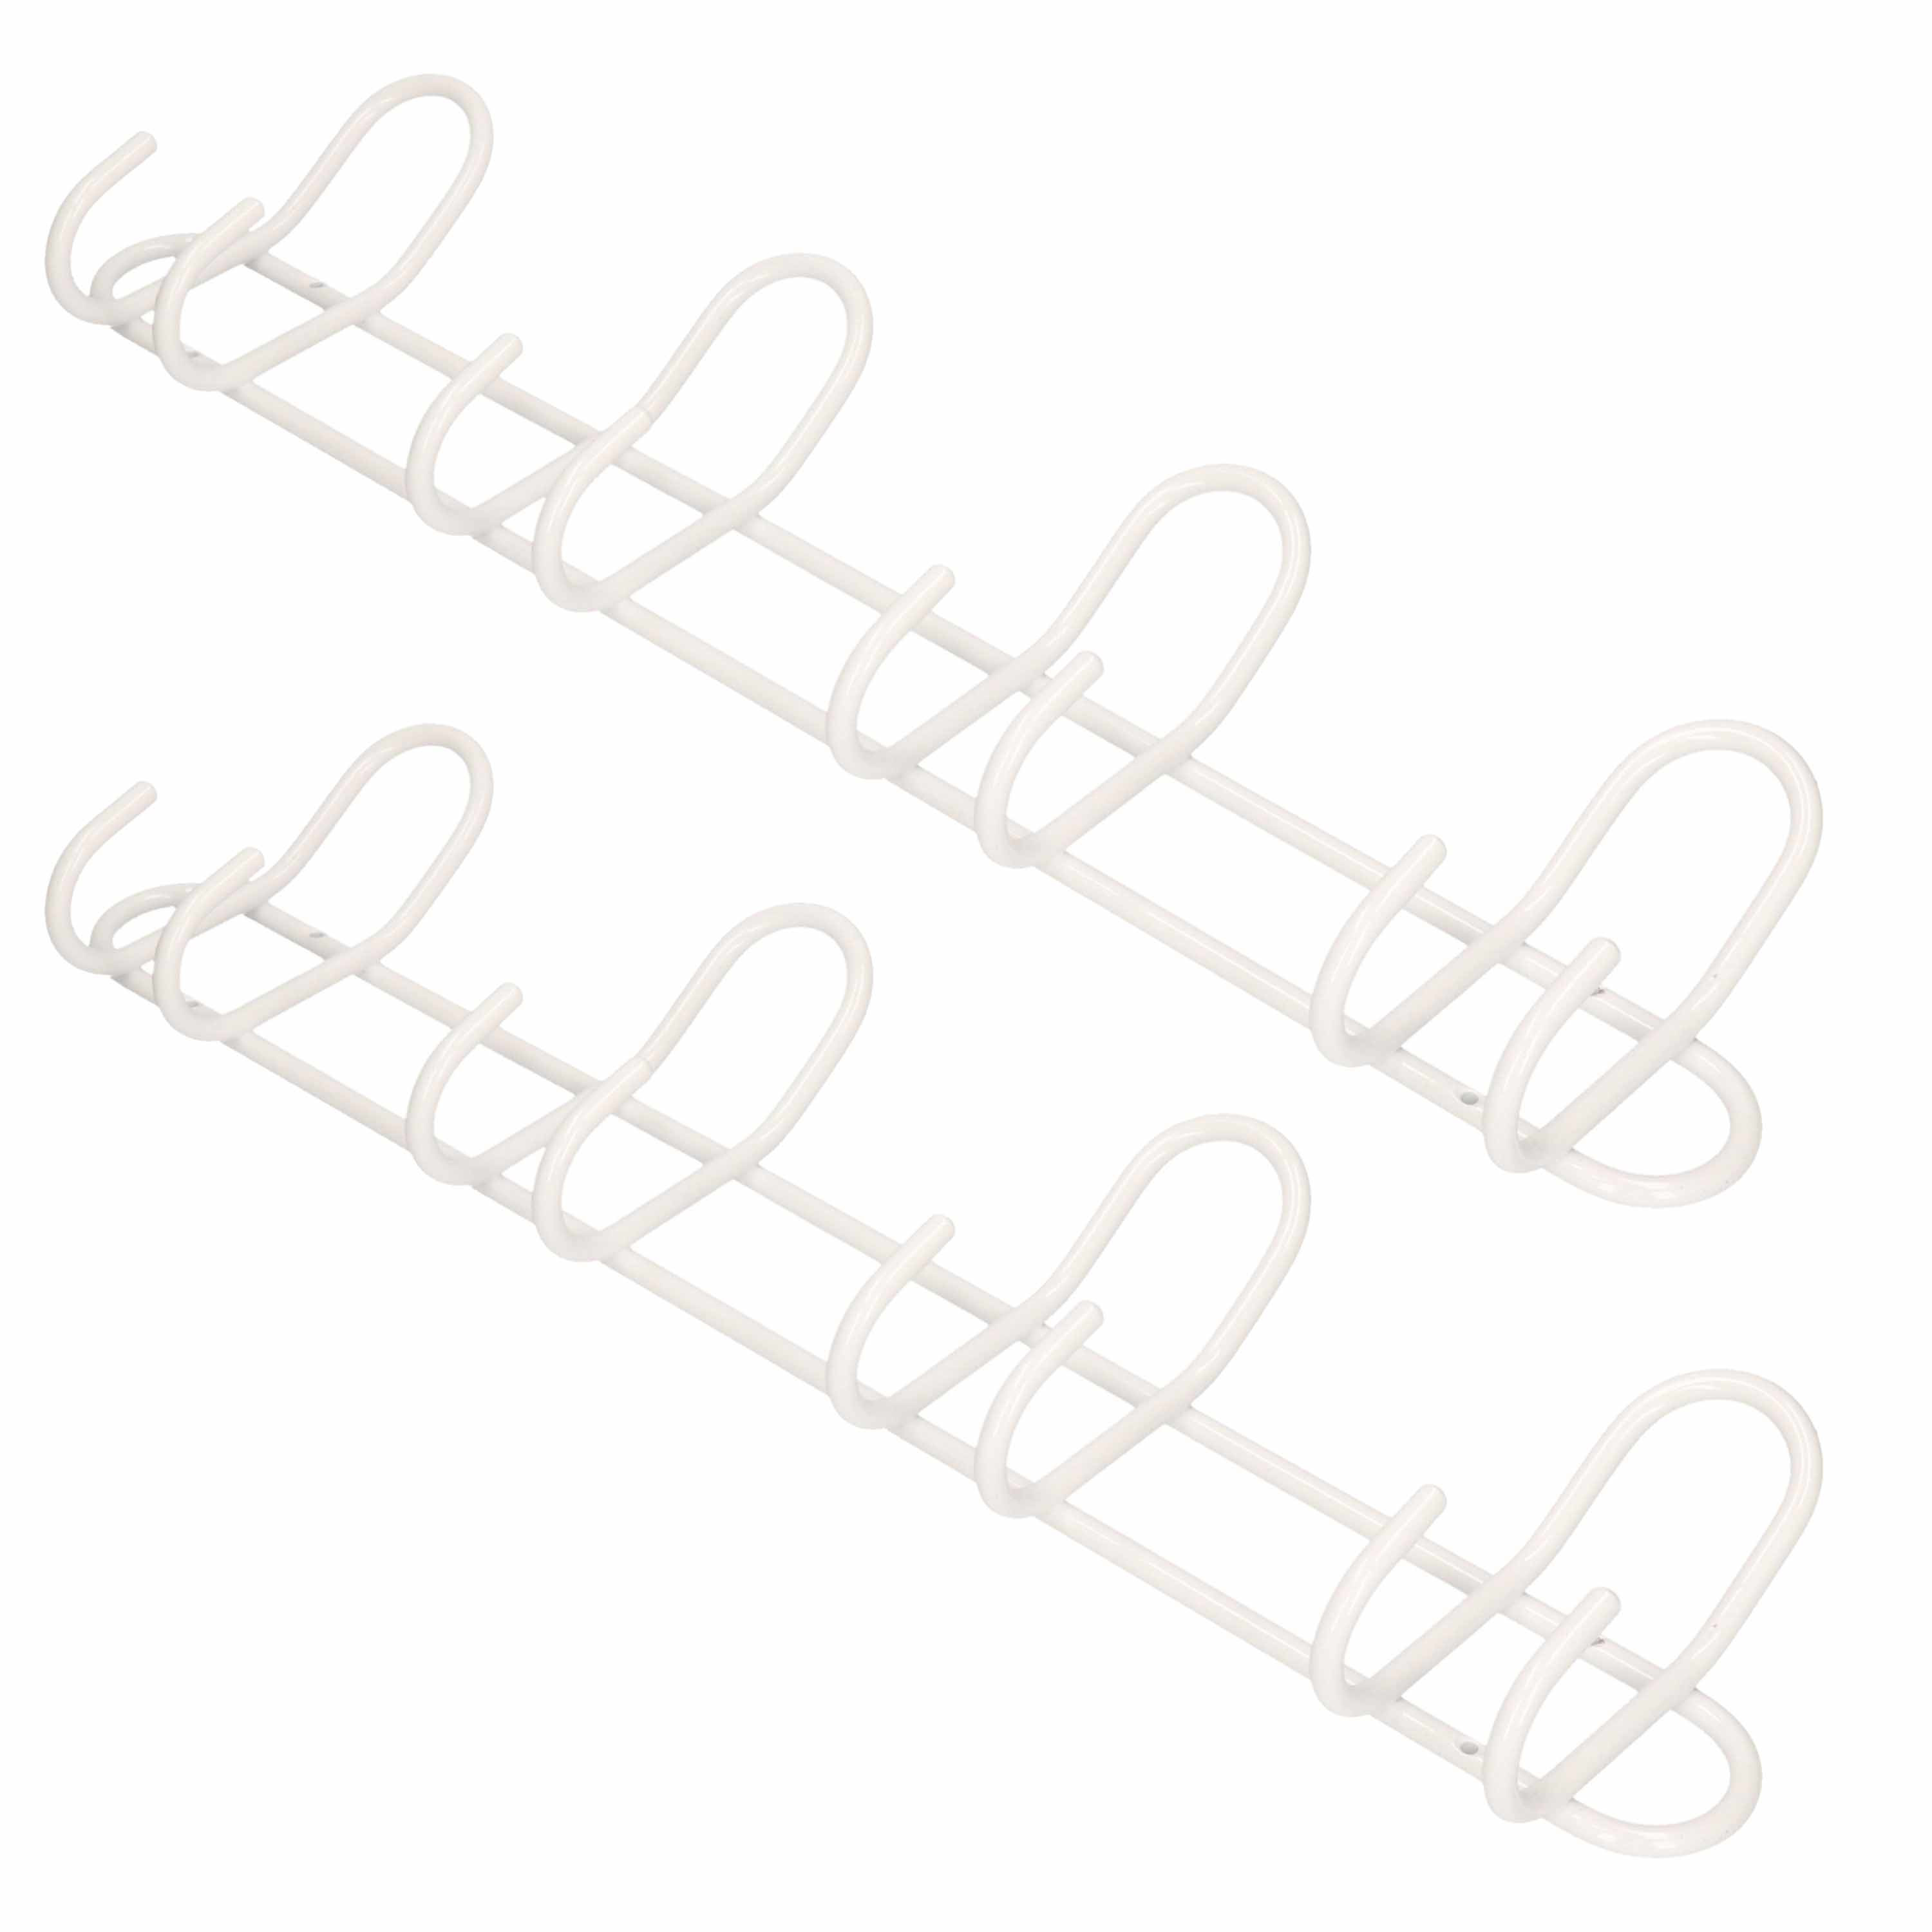 Merkloos 2x Luxe kapstokken / jashaken / wandstokken wit aluminium 4x dubbele haak 14,5 x 53 cm -